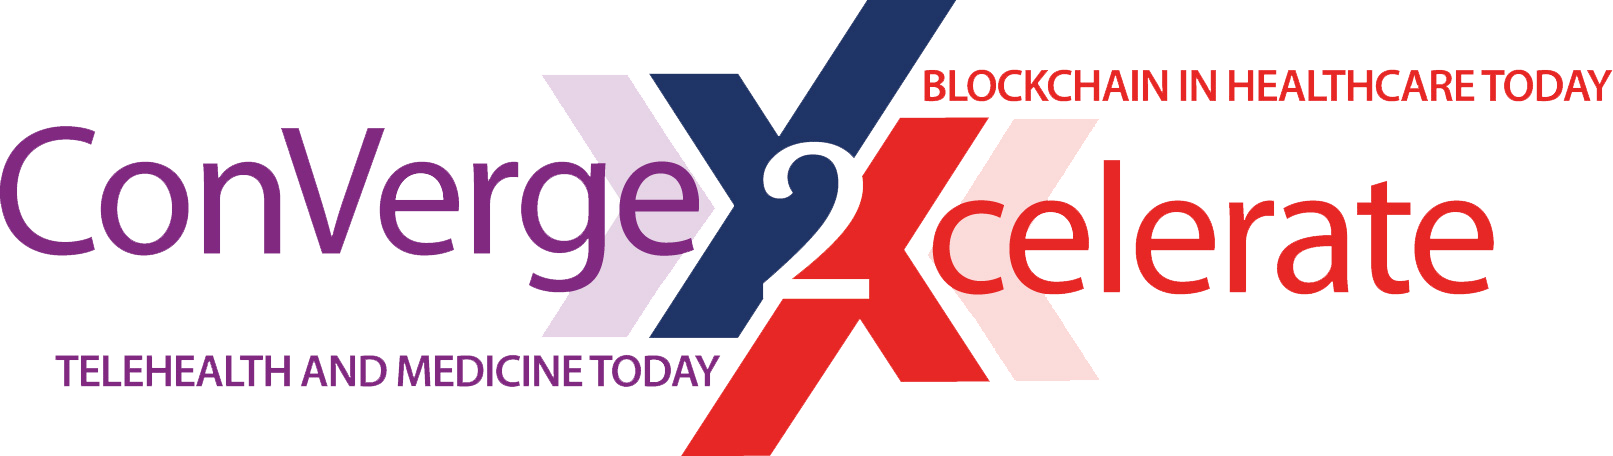 Converge2Xcelerate #ConV2X) 2019